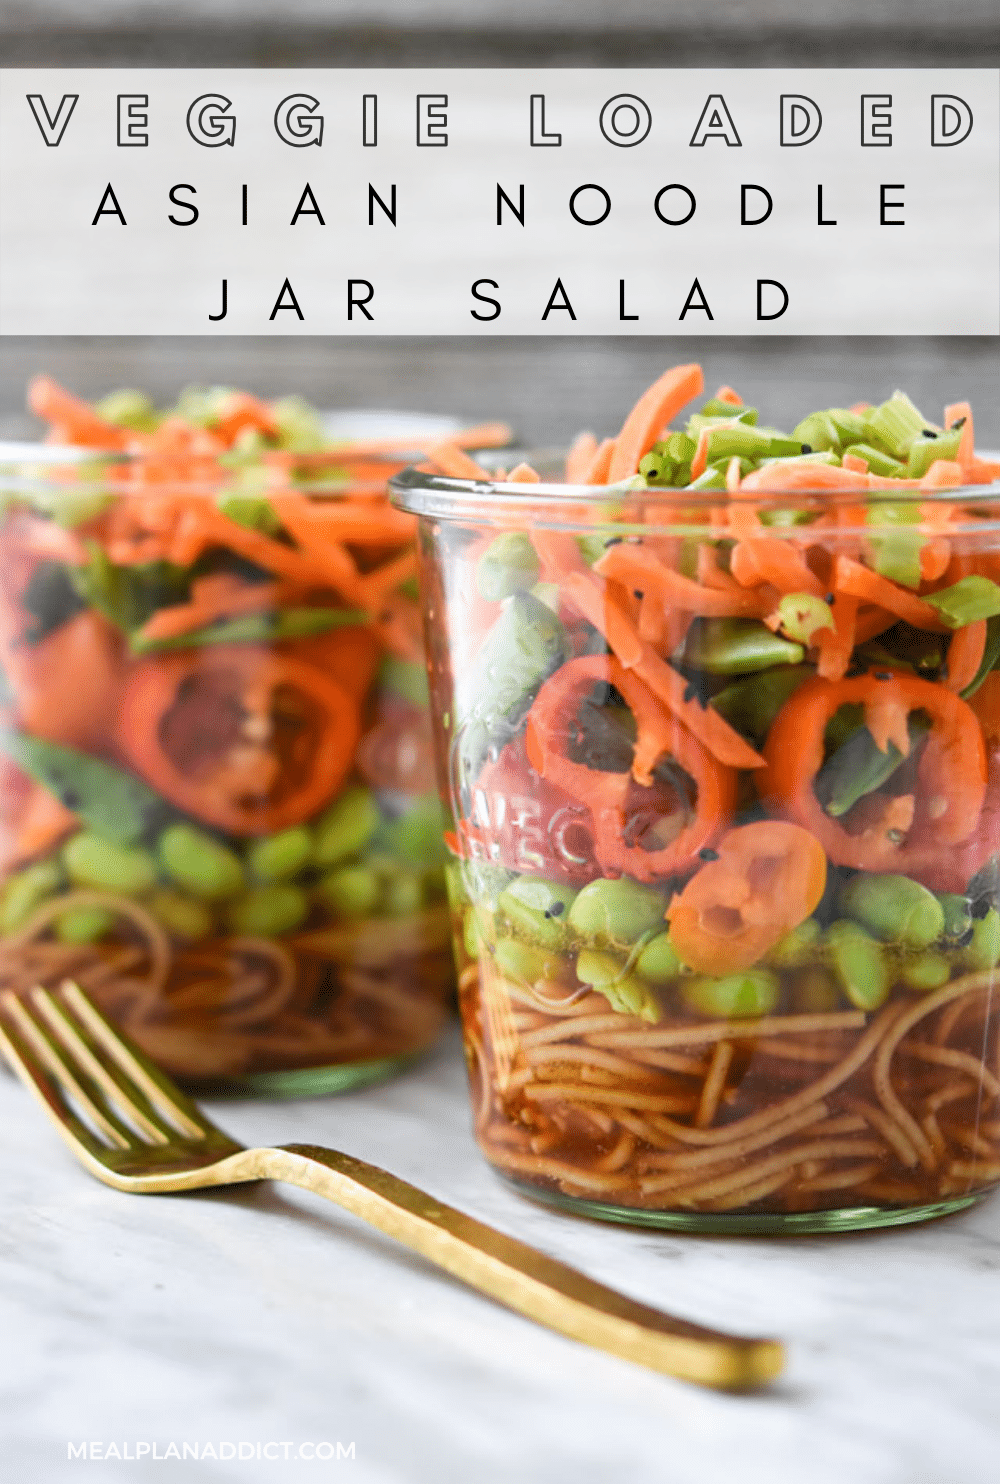 Asian noodle jar salad pin for Pinterest